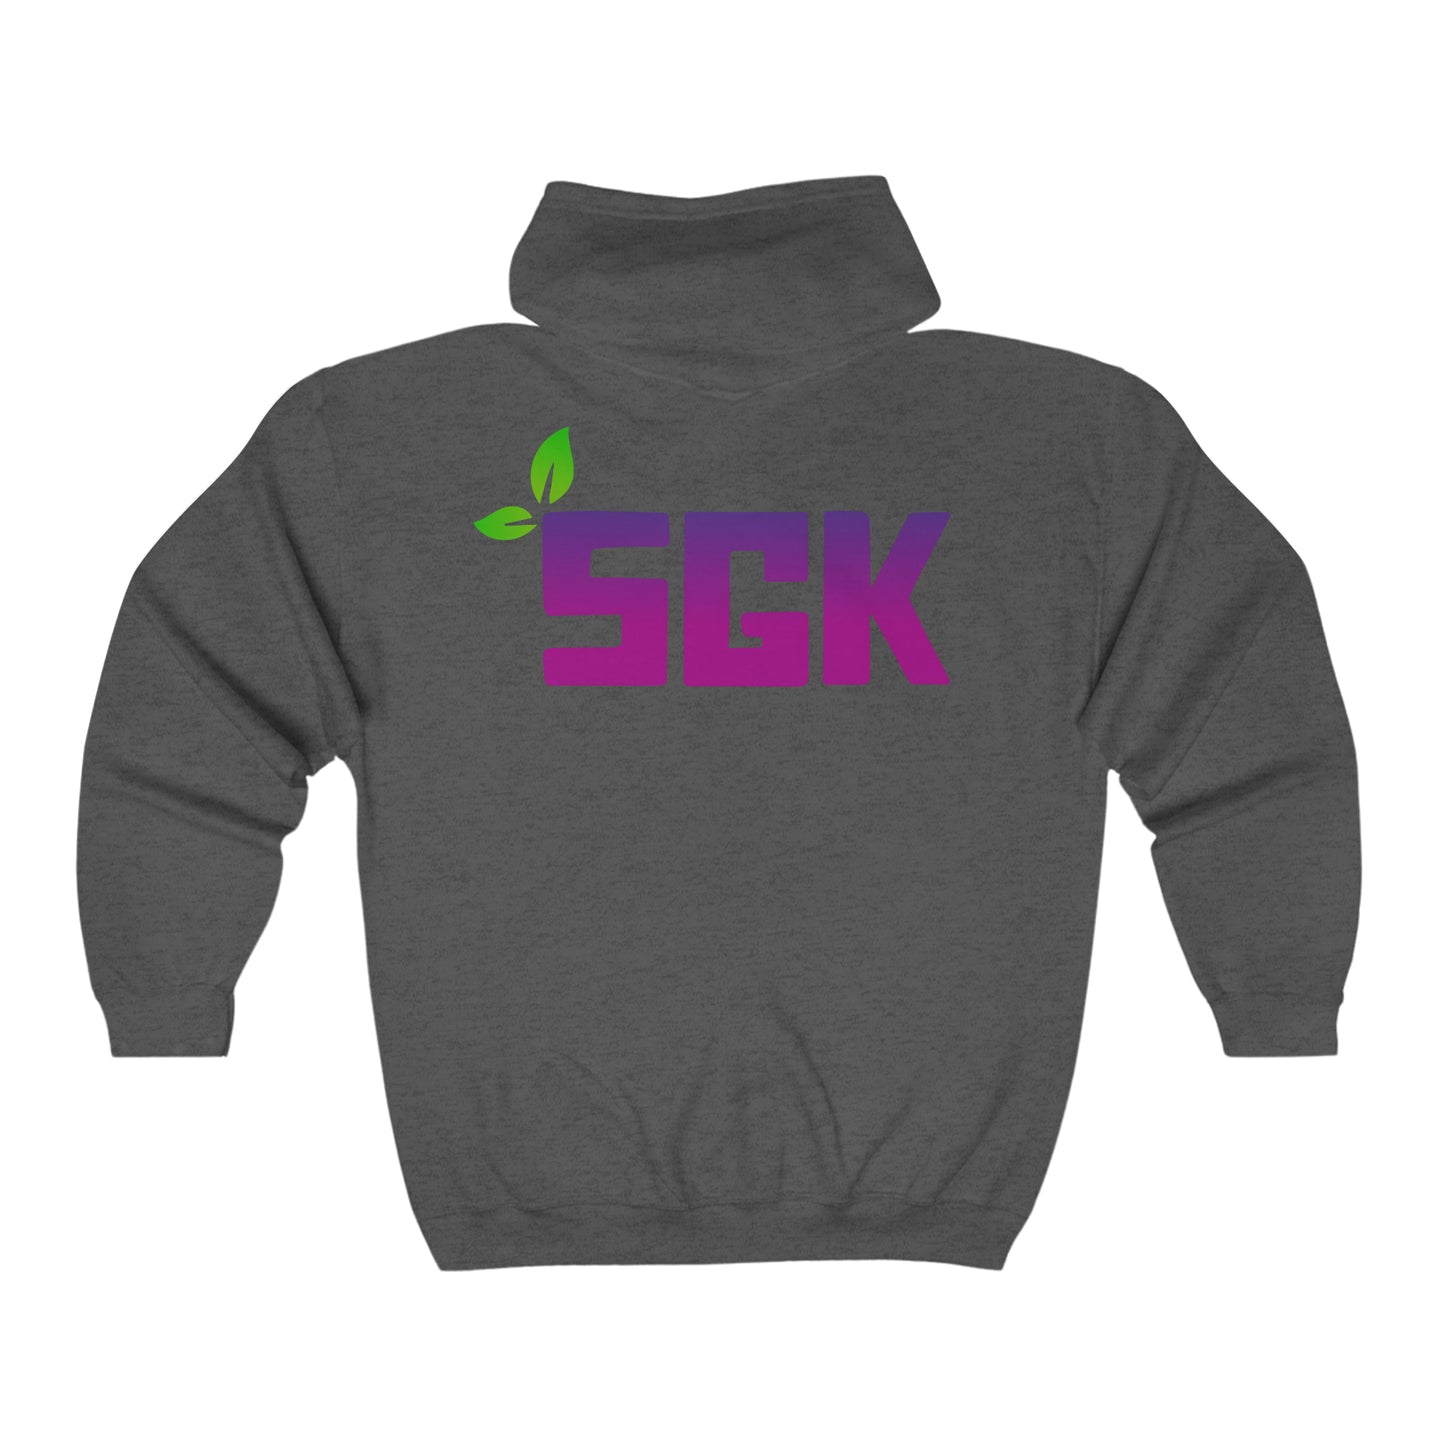 SGK Shield with Purple Leaf Back Unisex Heavy Blend™ Full Zip Hooded Sweatshirt